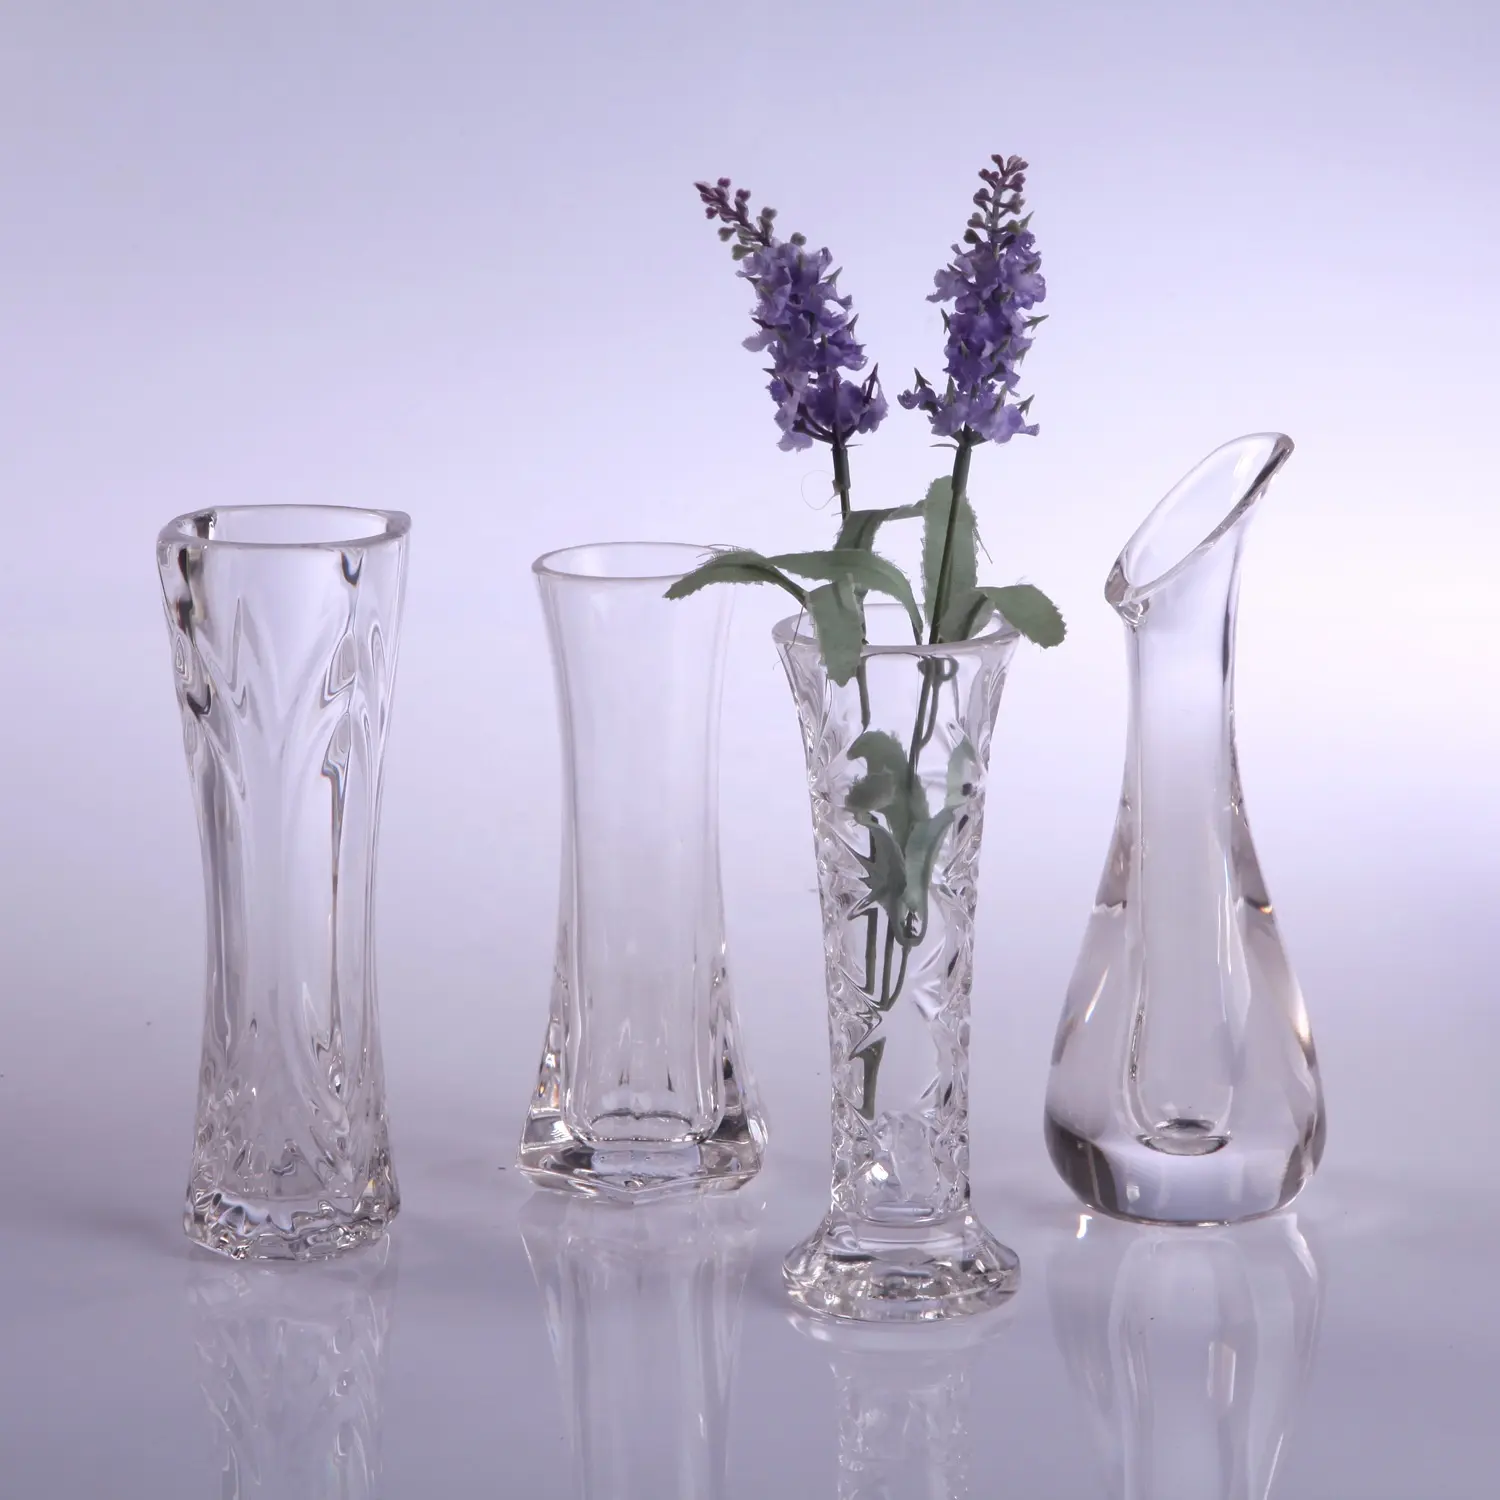 ジンデ透明プラスチッククリスタル小さな花瓶コーヒー洋食レストランホームテーブルオーナメント花瓶